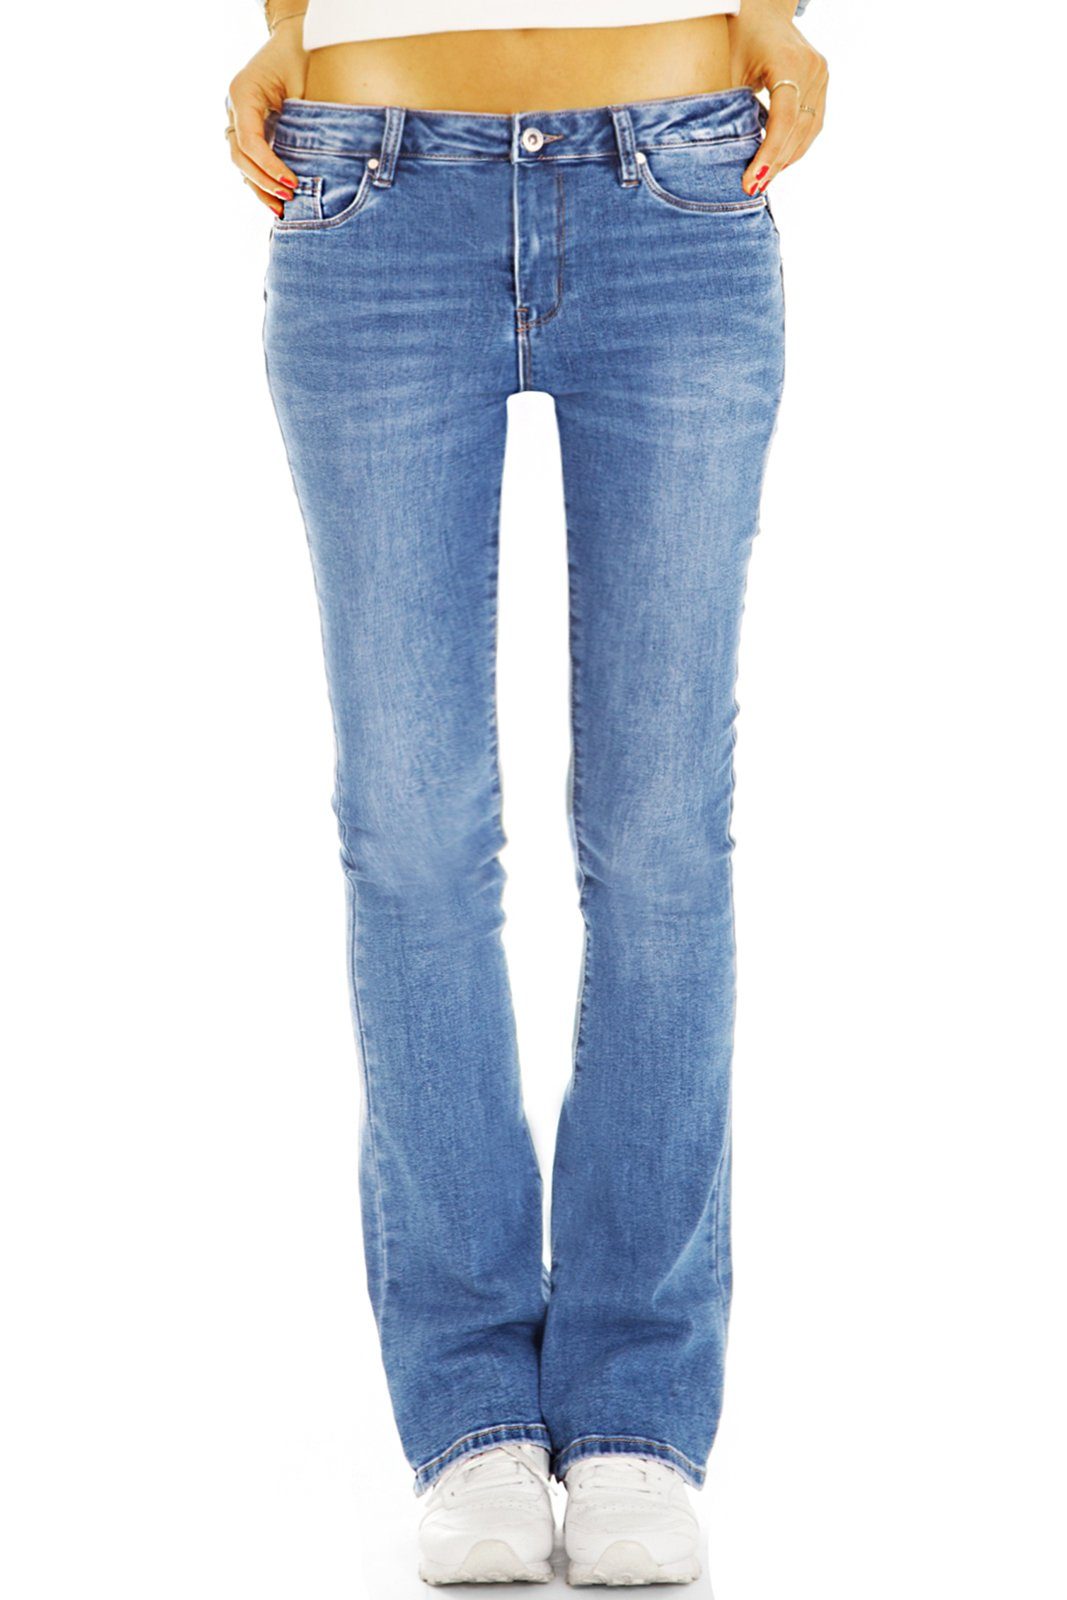 be styled Bootcut-Jeans Bootcut Jeans Medium Waist bequeme Stretch Denim Hosen - Damen - j44p mit Stretch-Anteil, 5-Pocket-Style dunkelblau